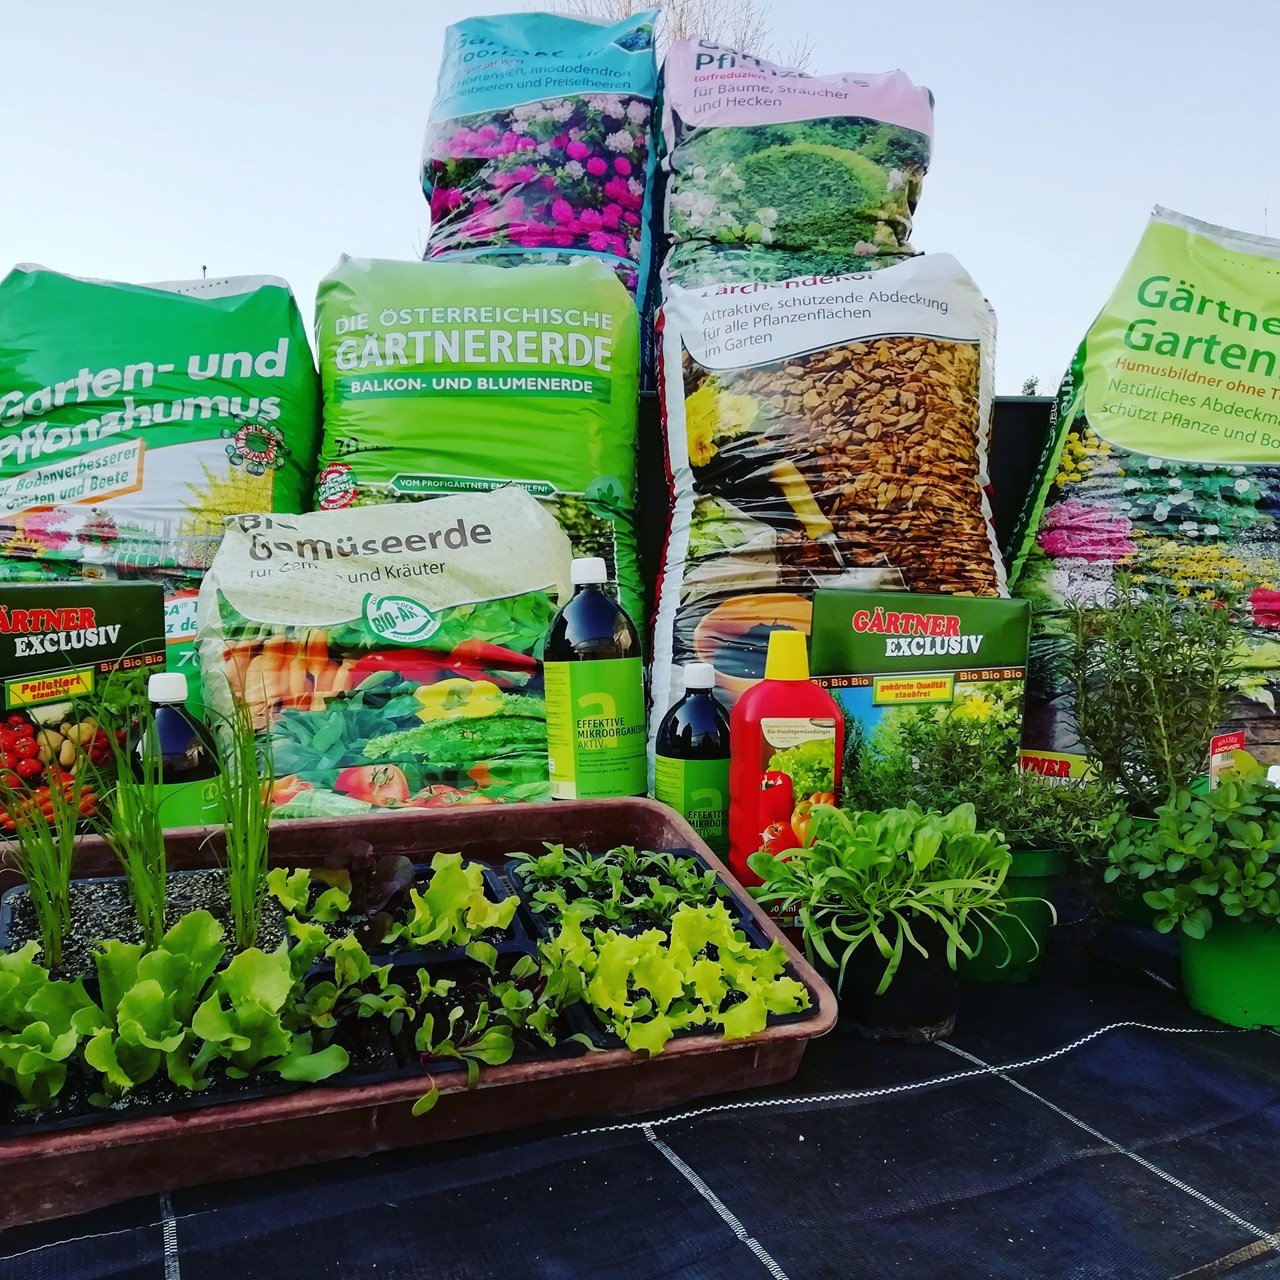 Gärtnerei Harasek  Produkt-Beispiele Erden, Dünger, Pflanzenhilfsmittel